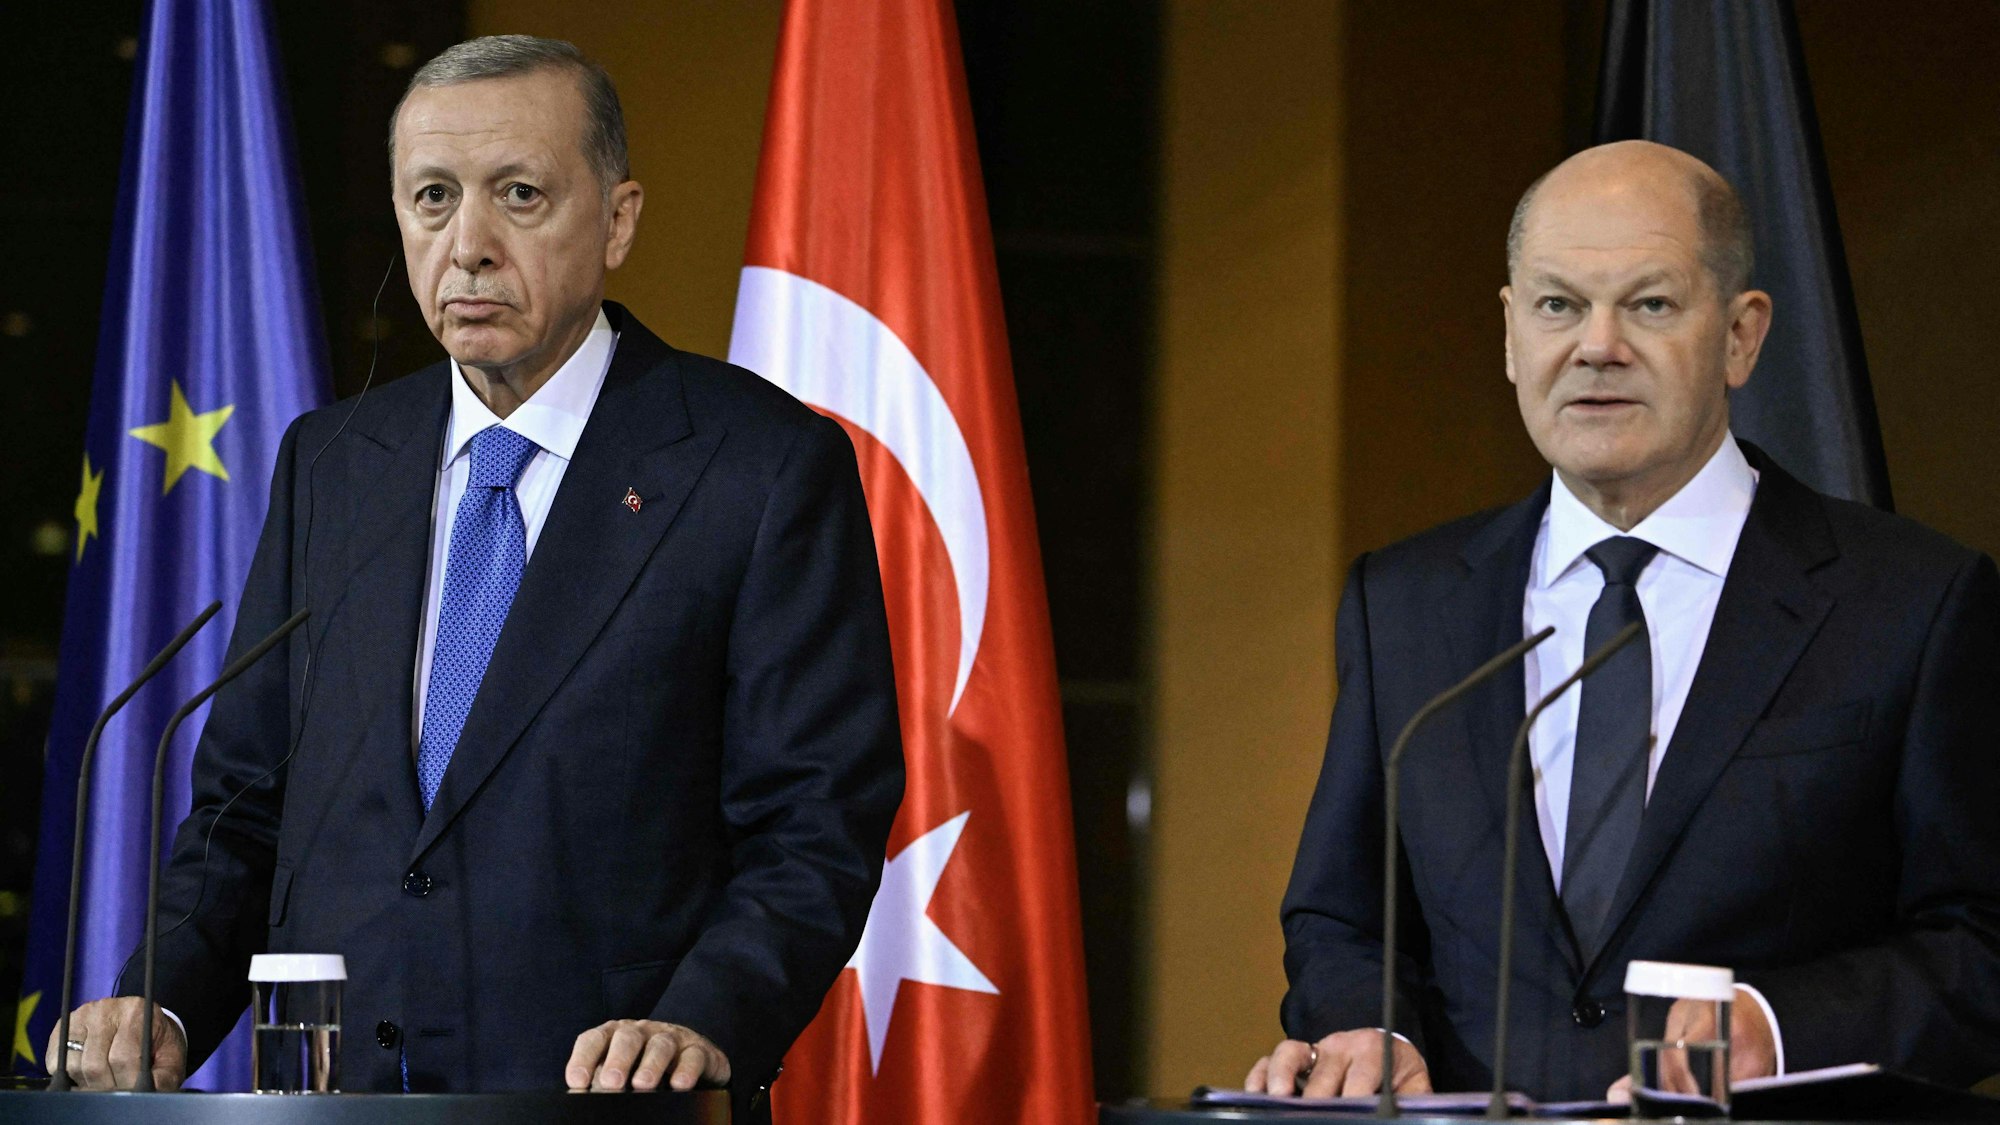 Der türkische Präsident Recep Tayyip Erdogan (links) und Bundeskanzler Olaf Scholz sprechen vor der Presse.